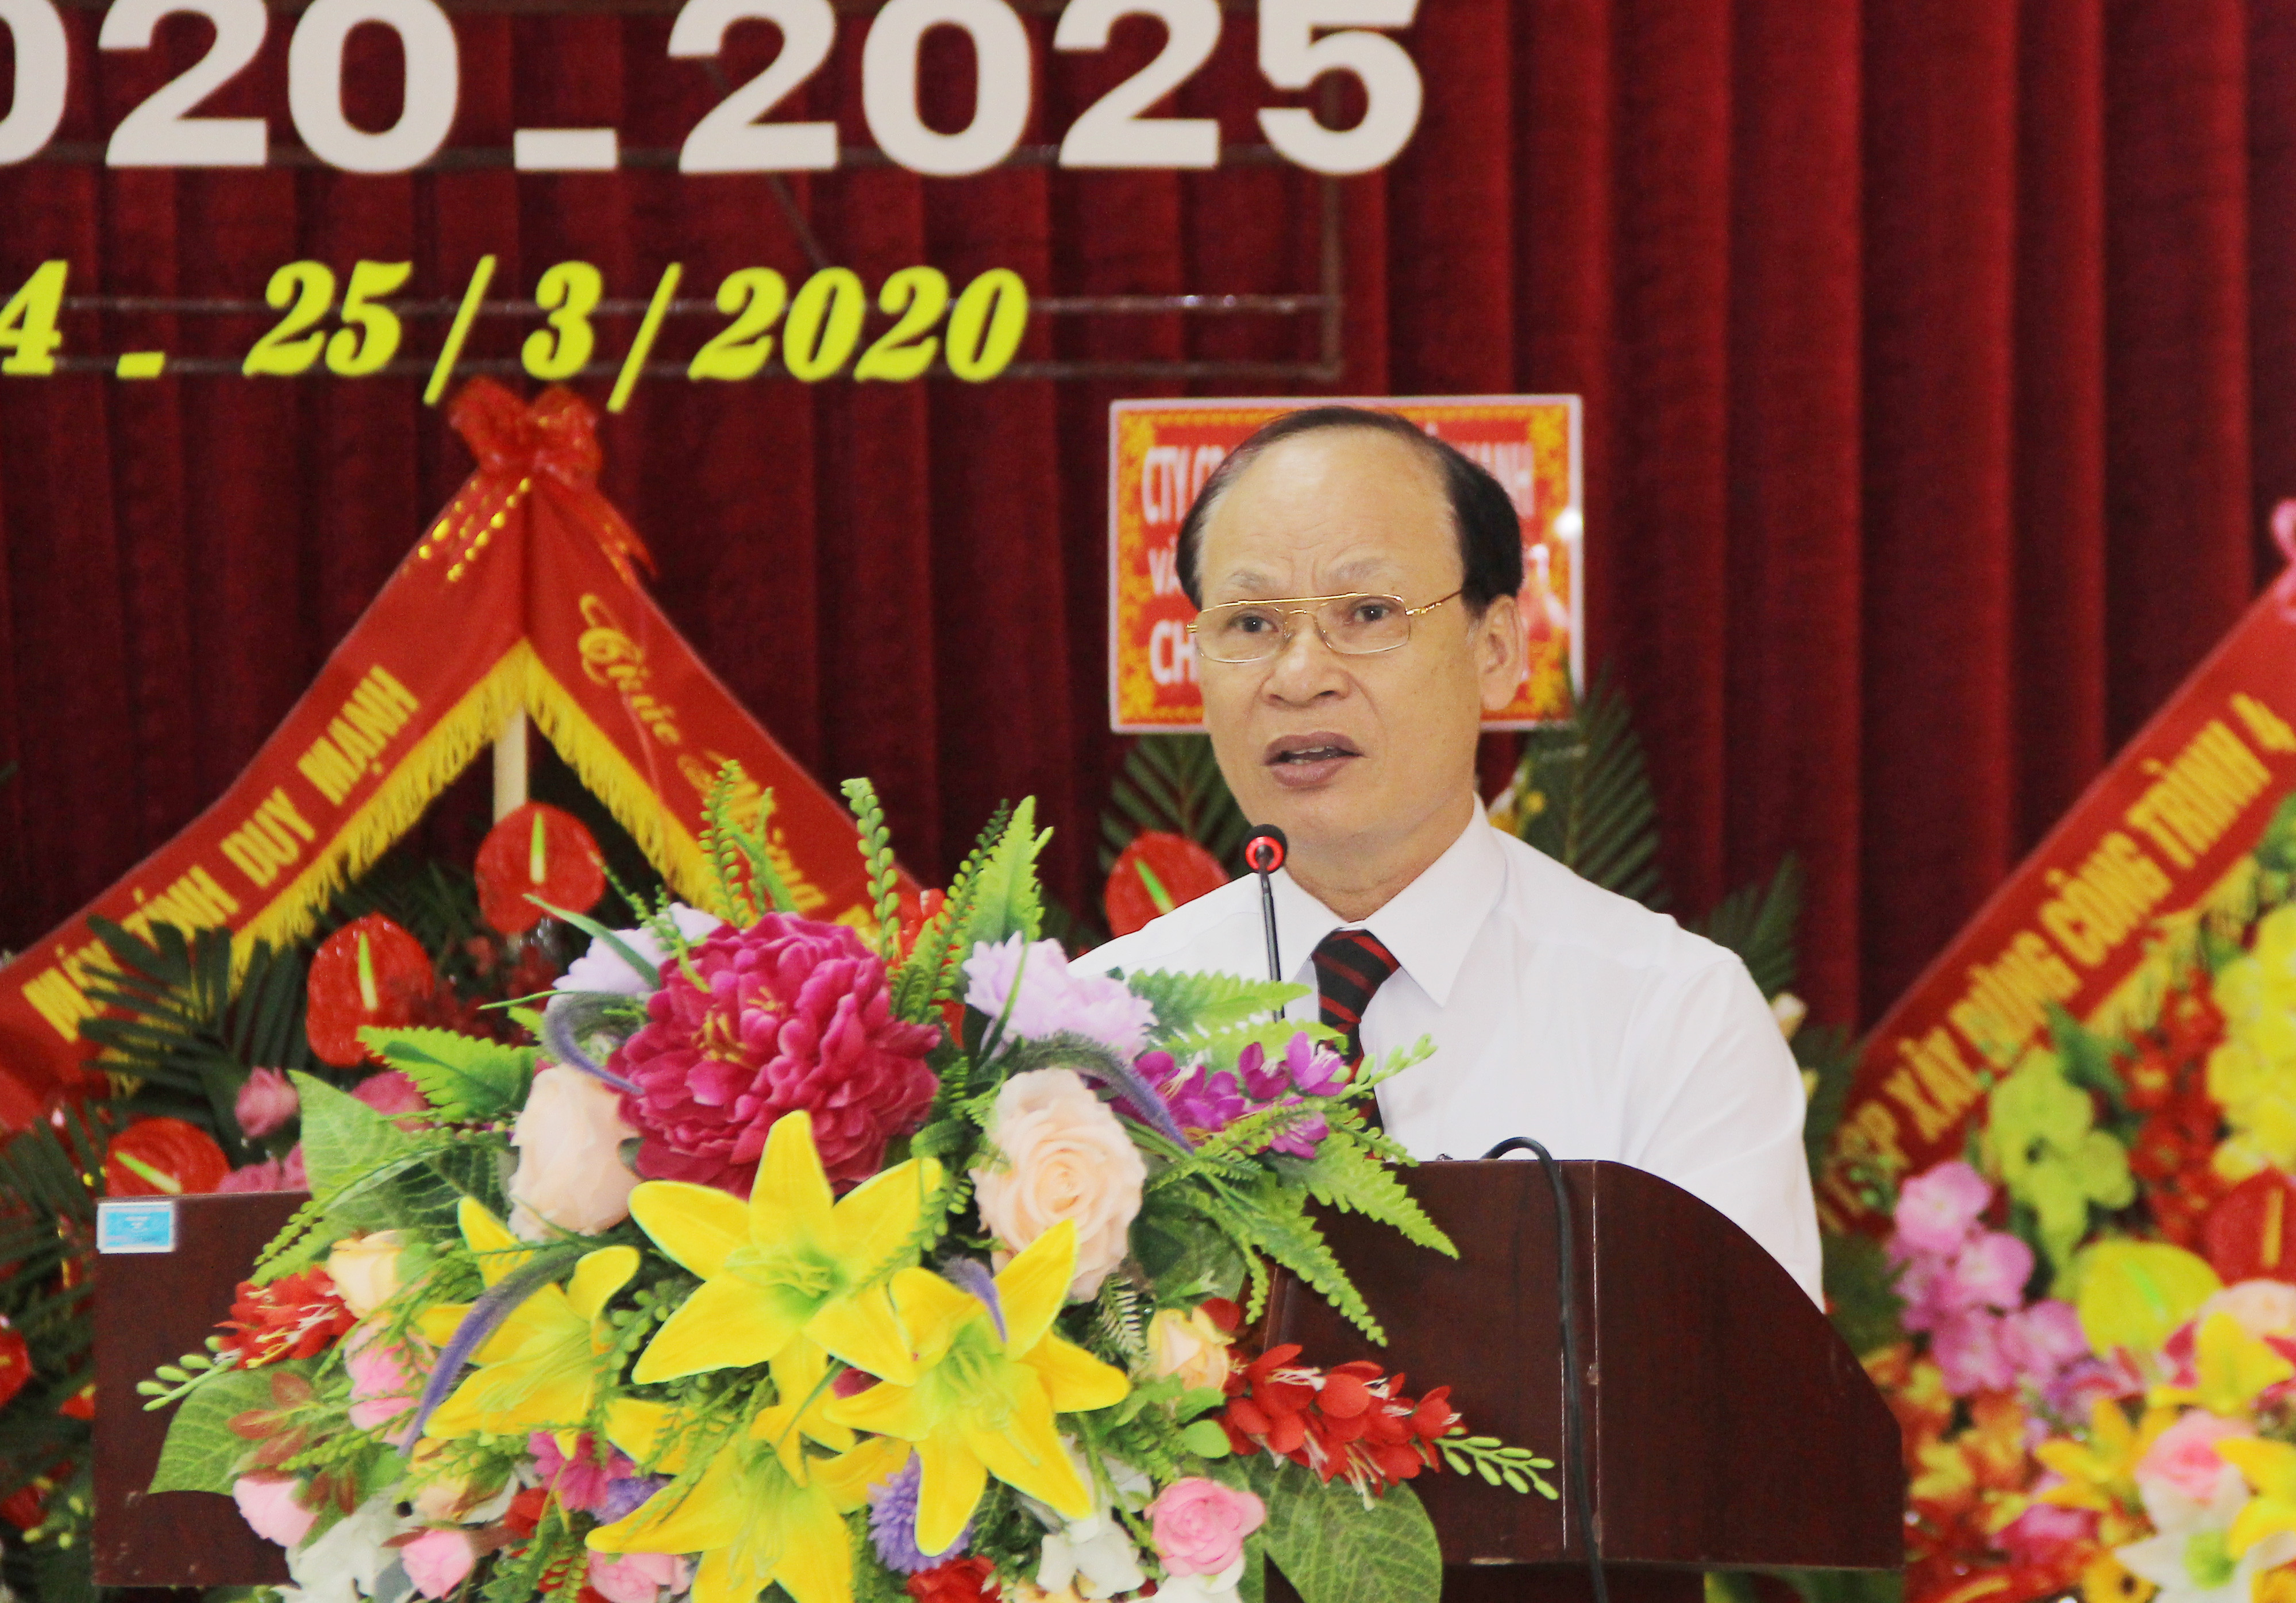 Bí thư Huyện ủy Hưng Nguyên Hoàng Văn Phi phát biểu đặt ra yêu cầu đối với Đảng bộ xã Hưng Lĩnh trong nhiệm kỳ 2020 - 2025 phấn đấy xây dựng đạt chuẩn NTM kiểu mẫu. Ảnh: Mai Hoa